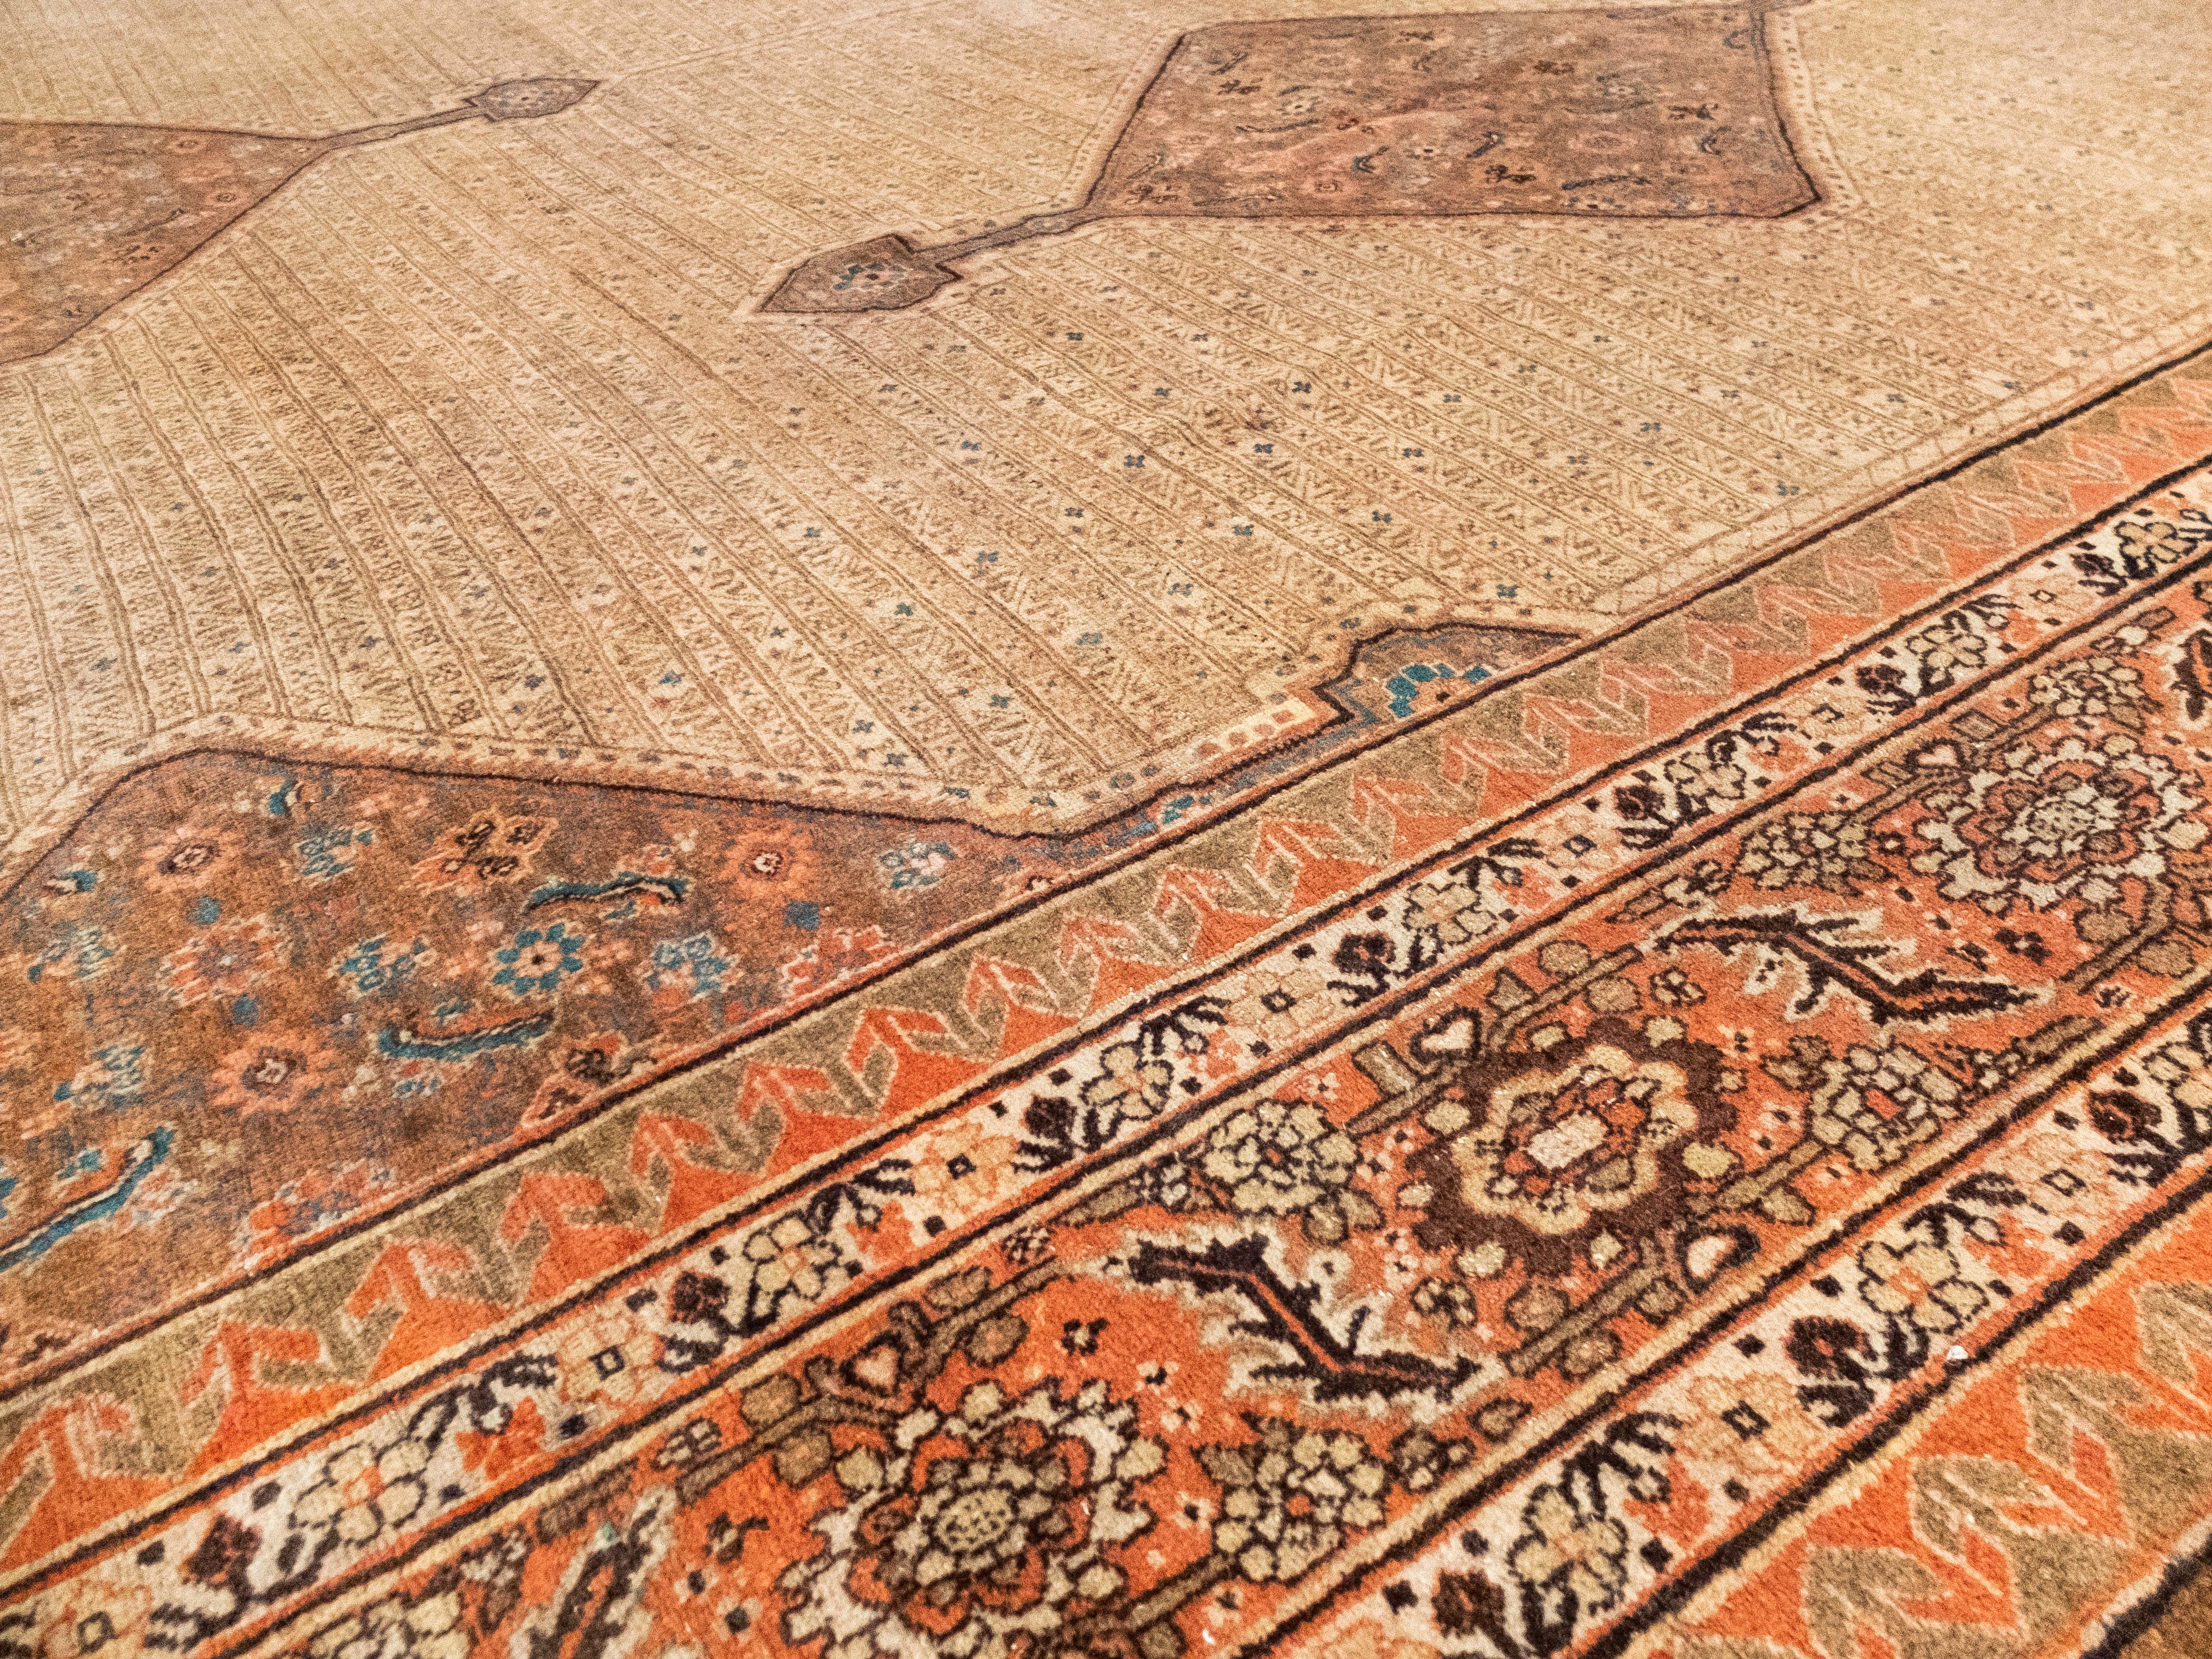 Dies ist ein Haji Jalili Tabriz Teppich, was bedeutet, dass er aus einer der hochwertigsten Mühlen/Häuser seiner Zeit stammt. Es zeigt exquisite Erdtöne wie Hellbraun, rötliches Braun und gebrannte Siena. Das Hauptfeld besteht aus 5 geometrischen